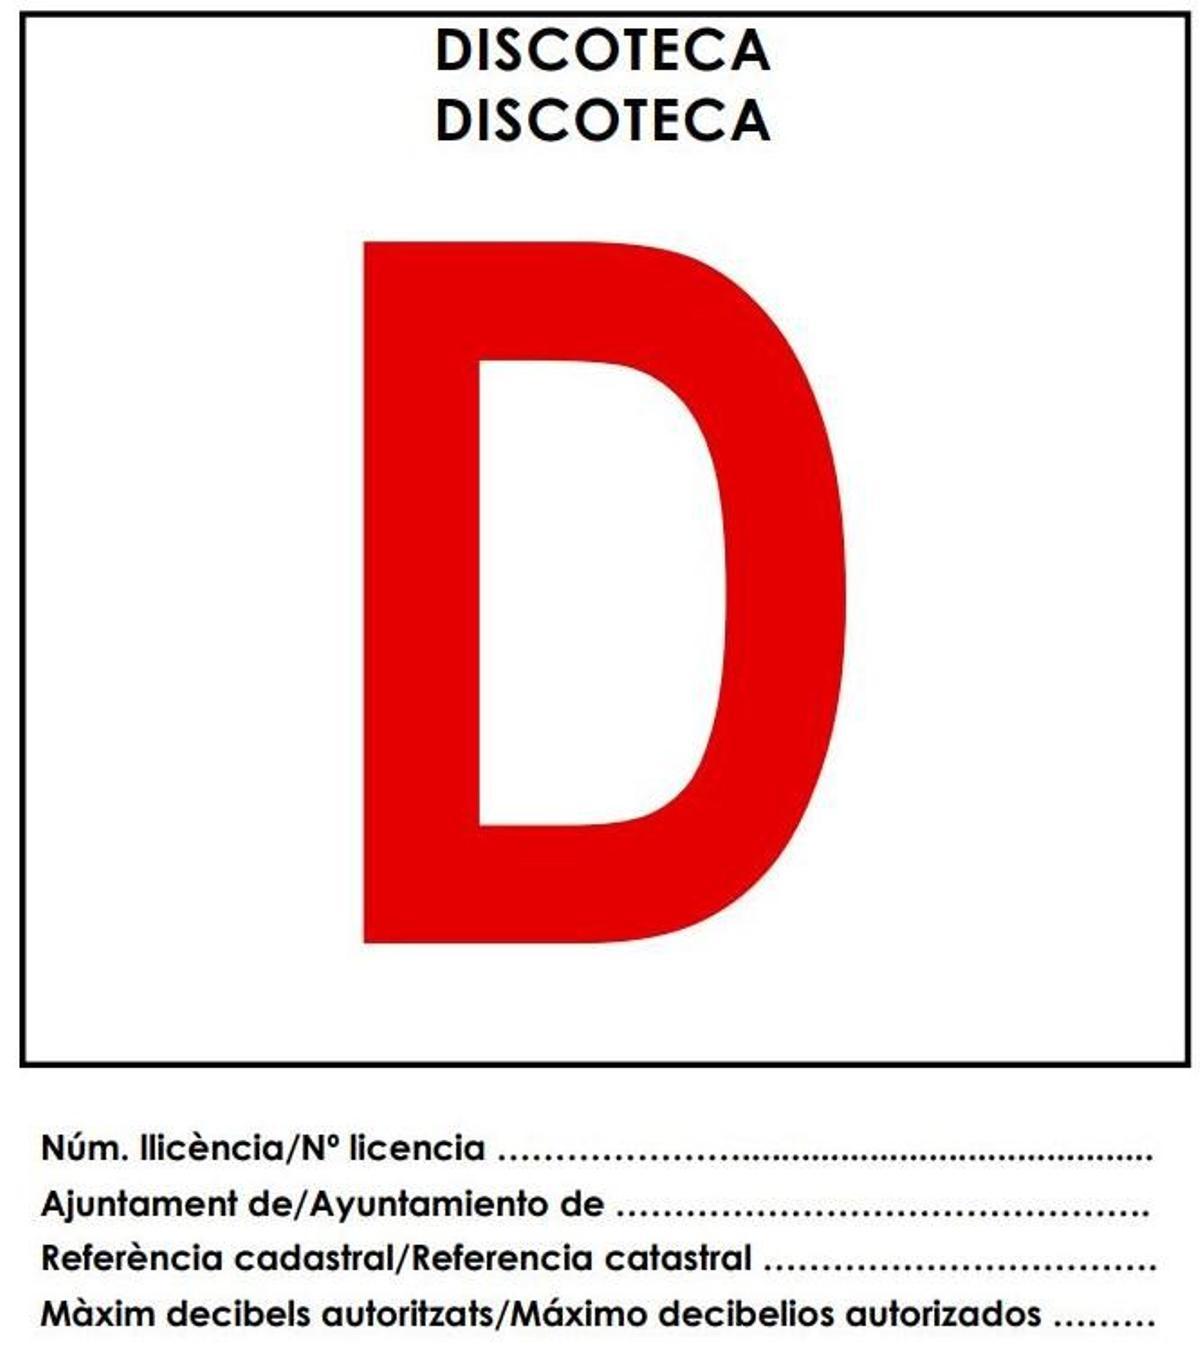 Placa identificativa de una discoteca según la orden del pasado mes de mayo.